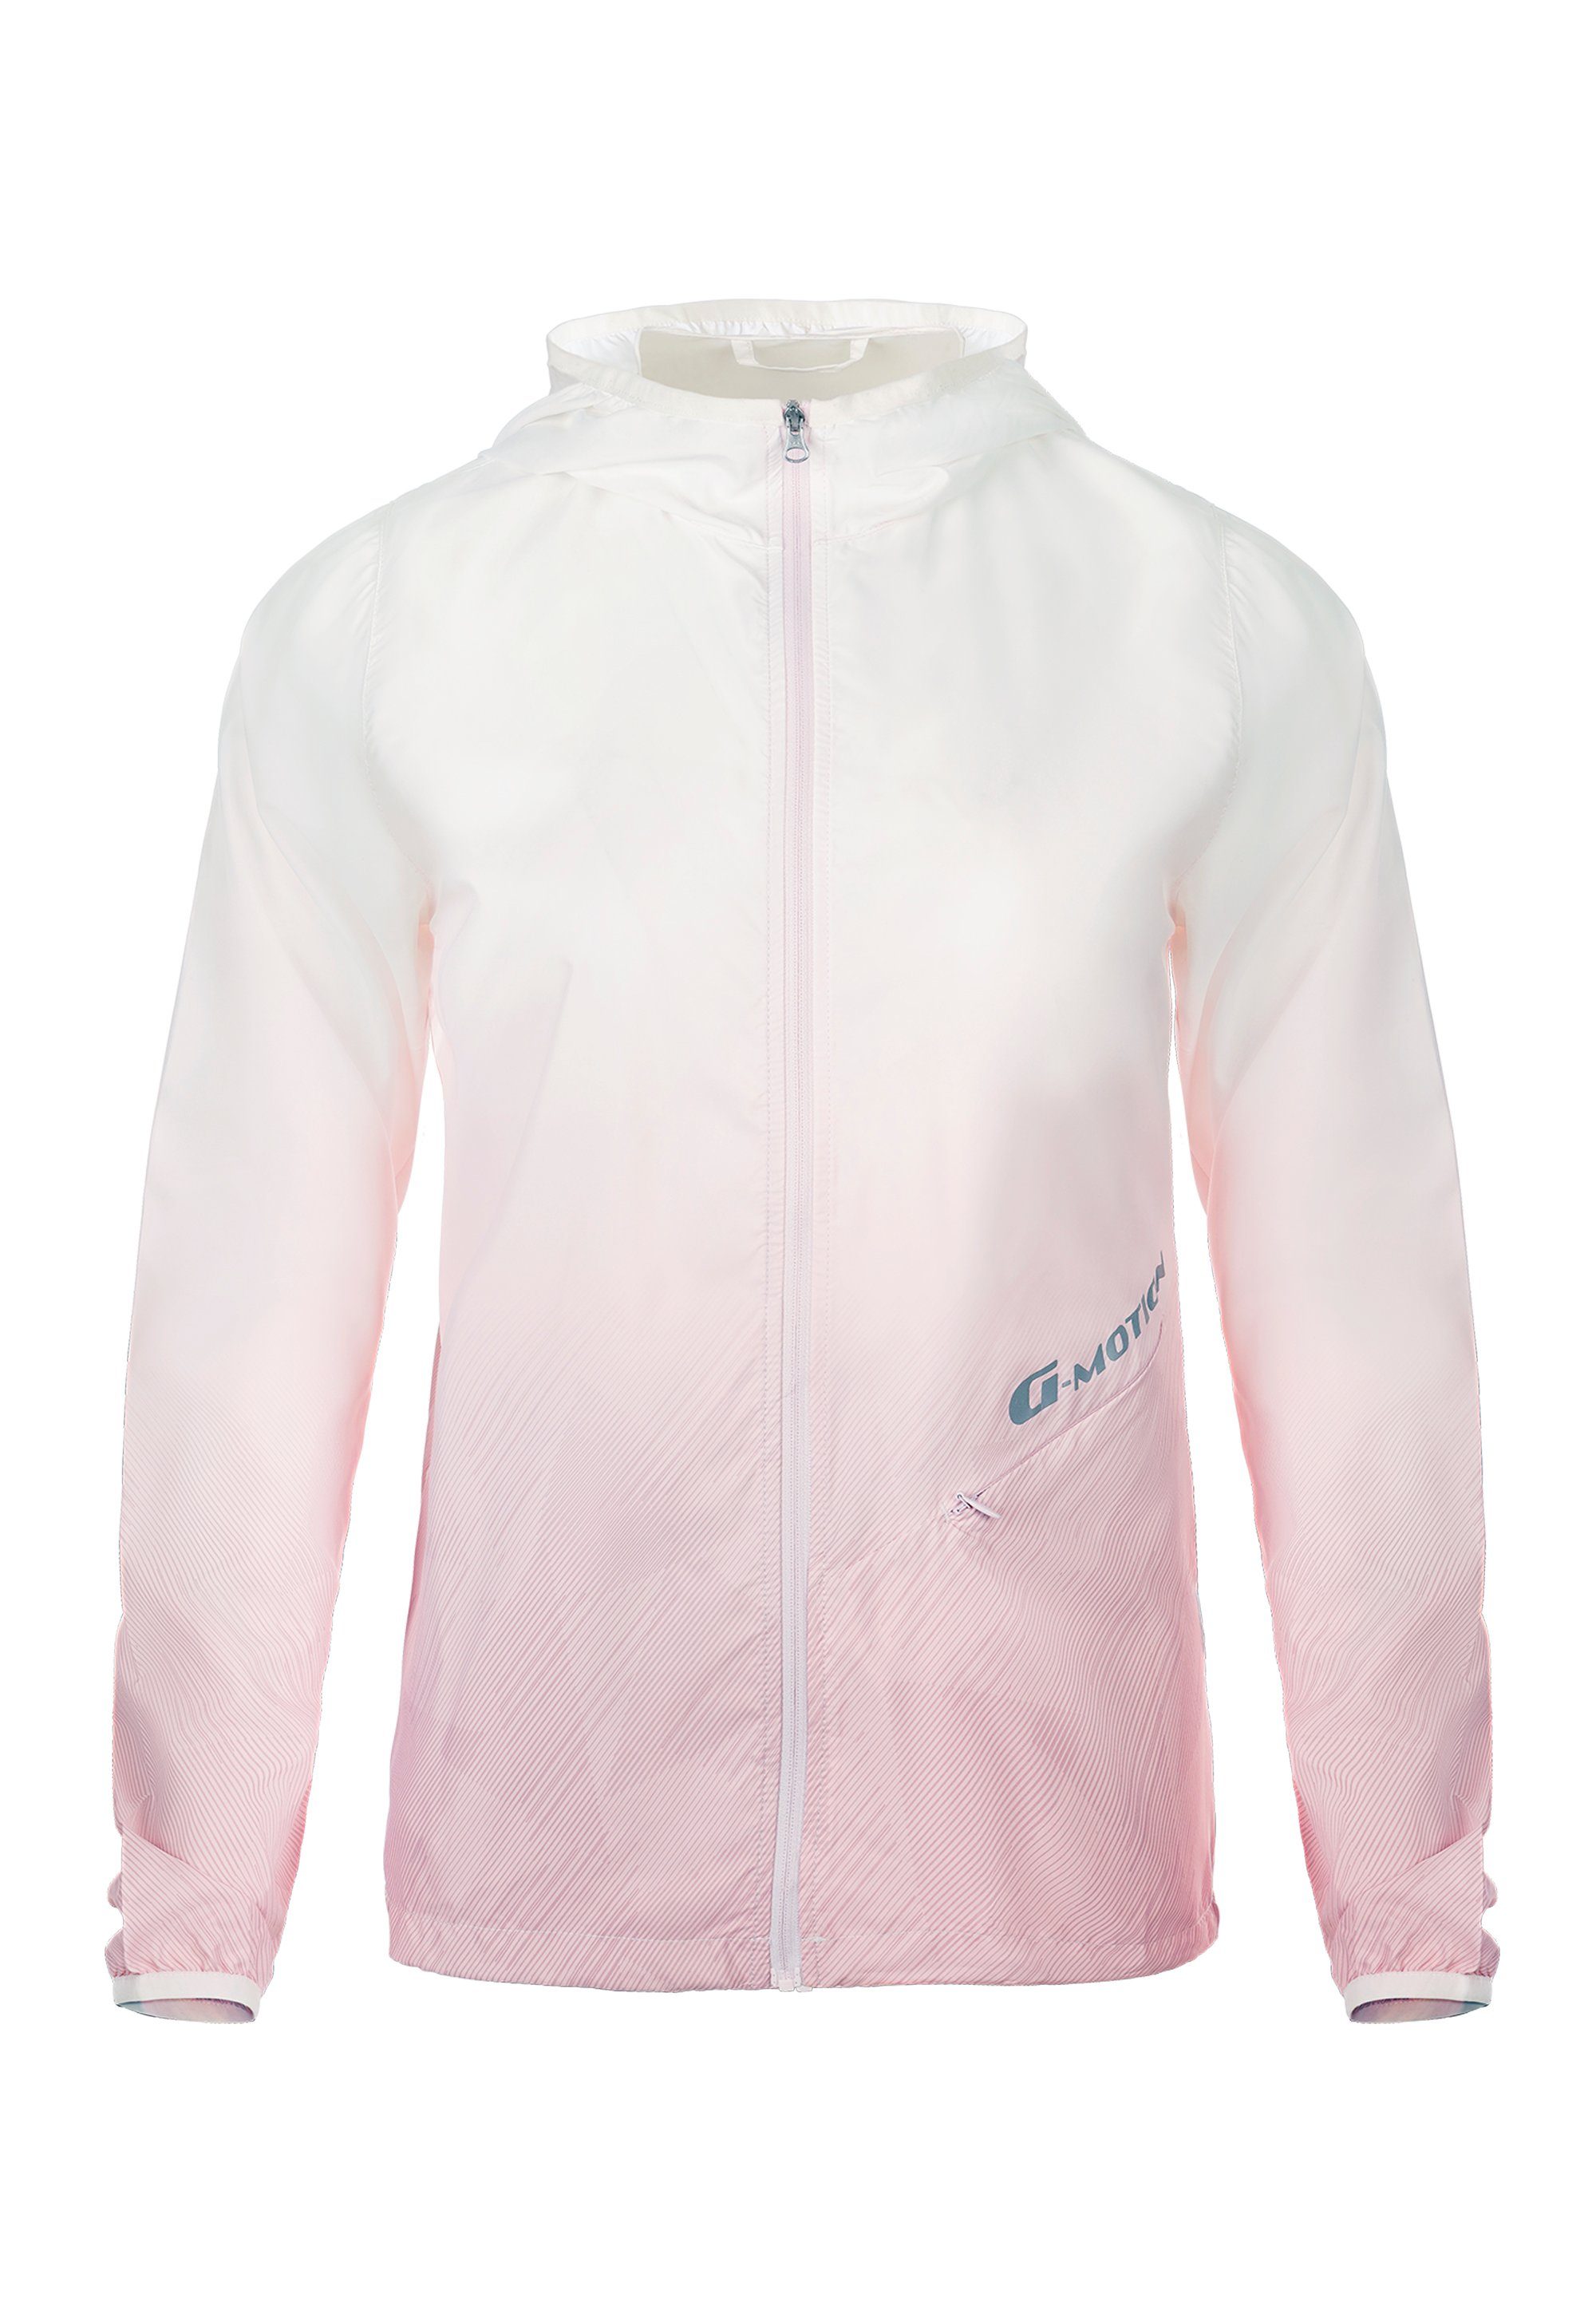 GIORDANO UV-Schutzfaktor Motion Outdoorjacke 50+ pink-weiß G mi